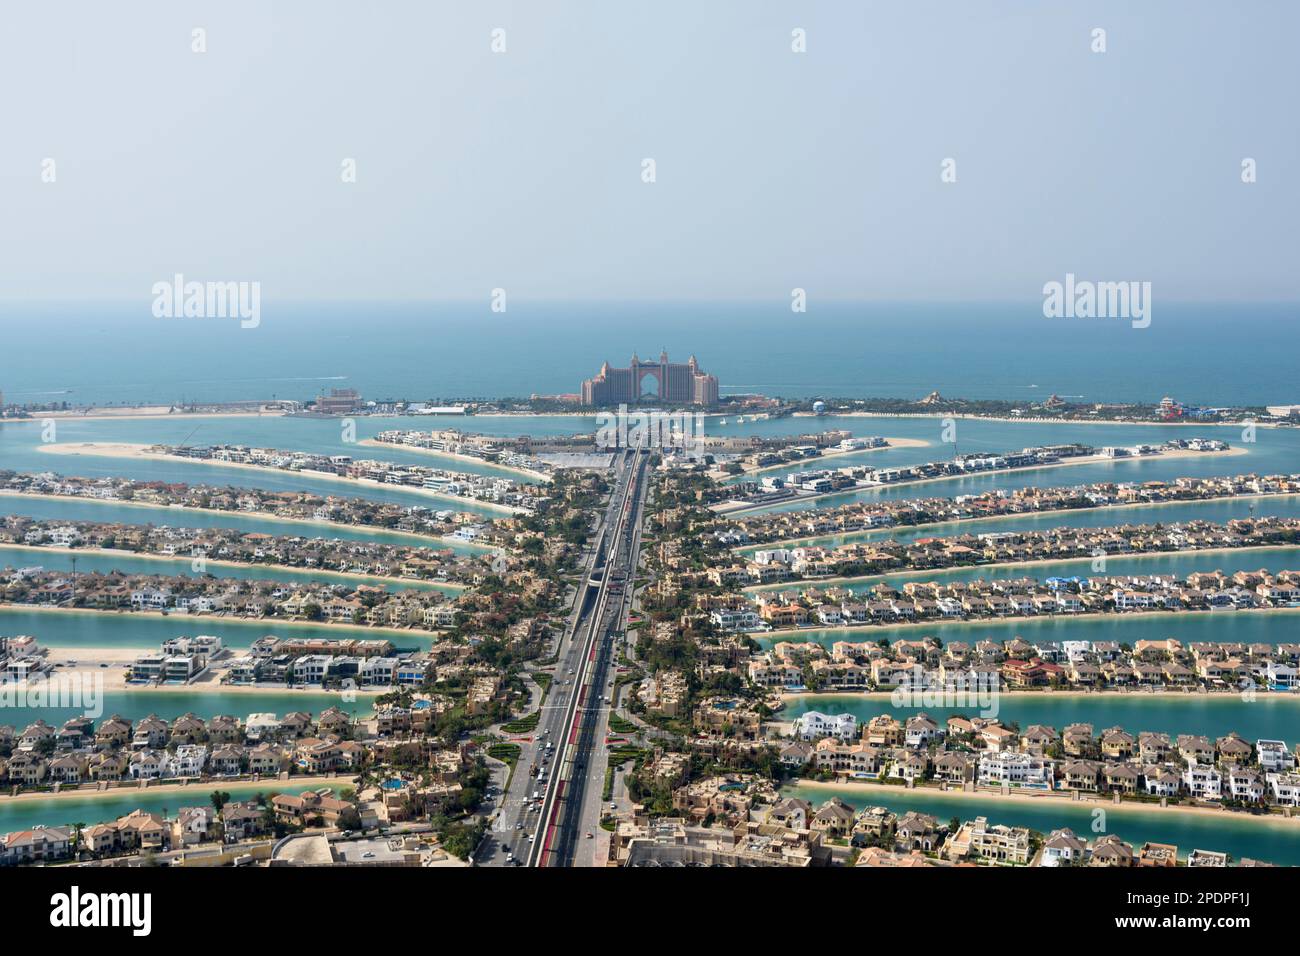 Vue sur Atlantis The Palm Hotel Resort depuis la vue sur The Palm, Palm Jumeirah, Dubaï, Émirats arabes Unis Banque D'Images